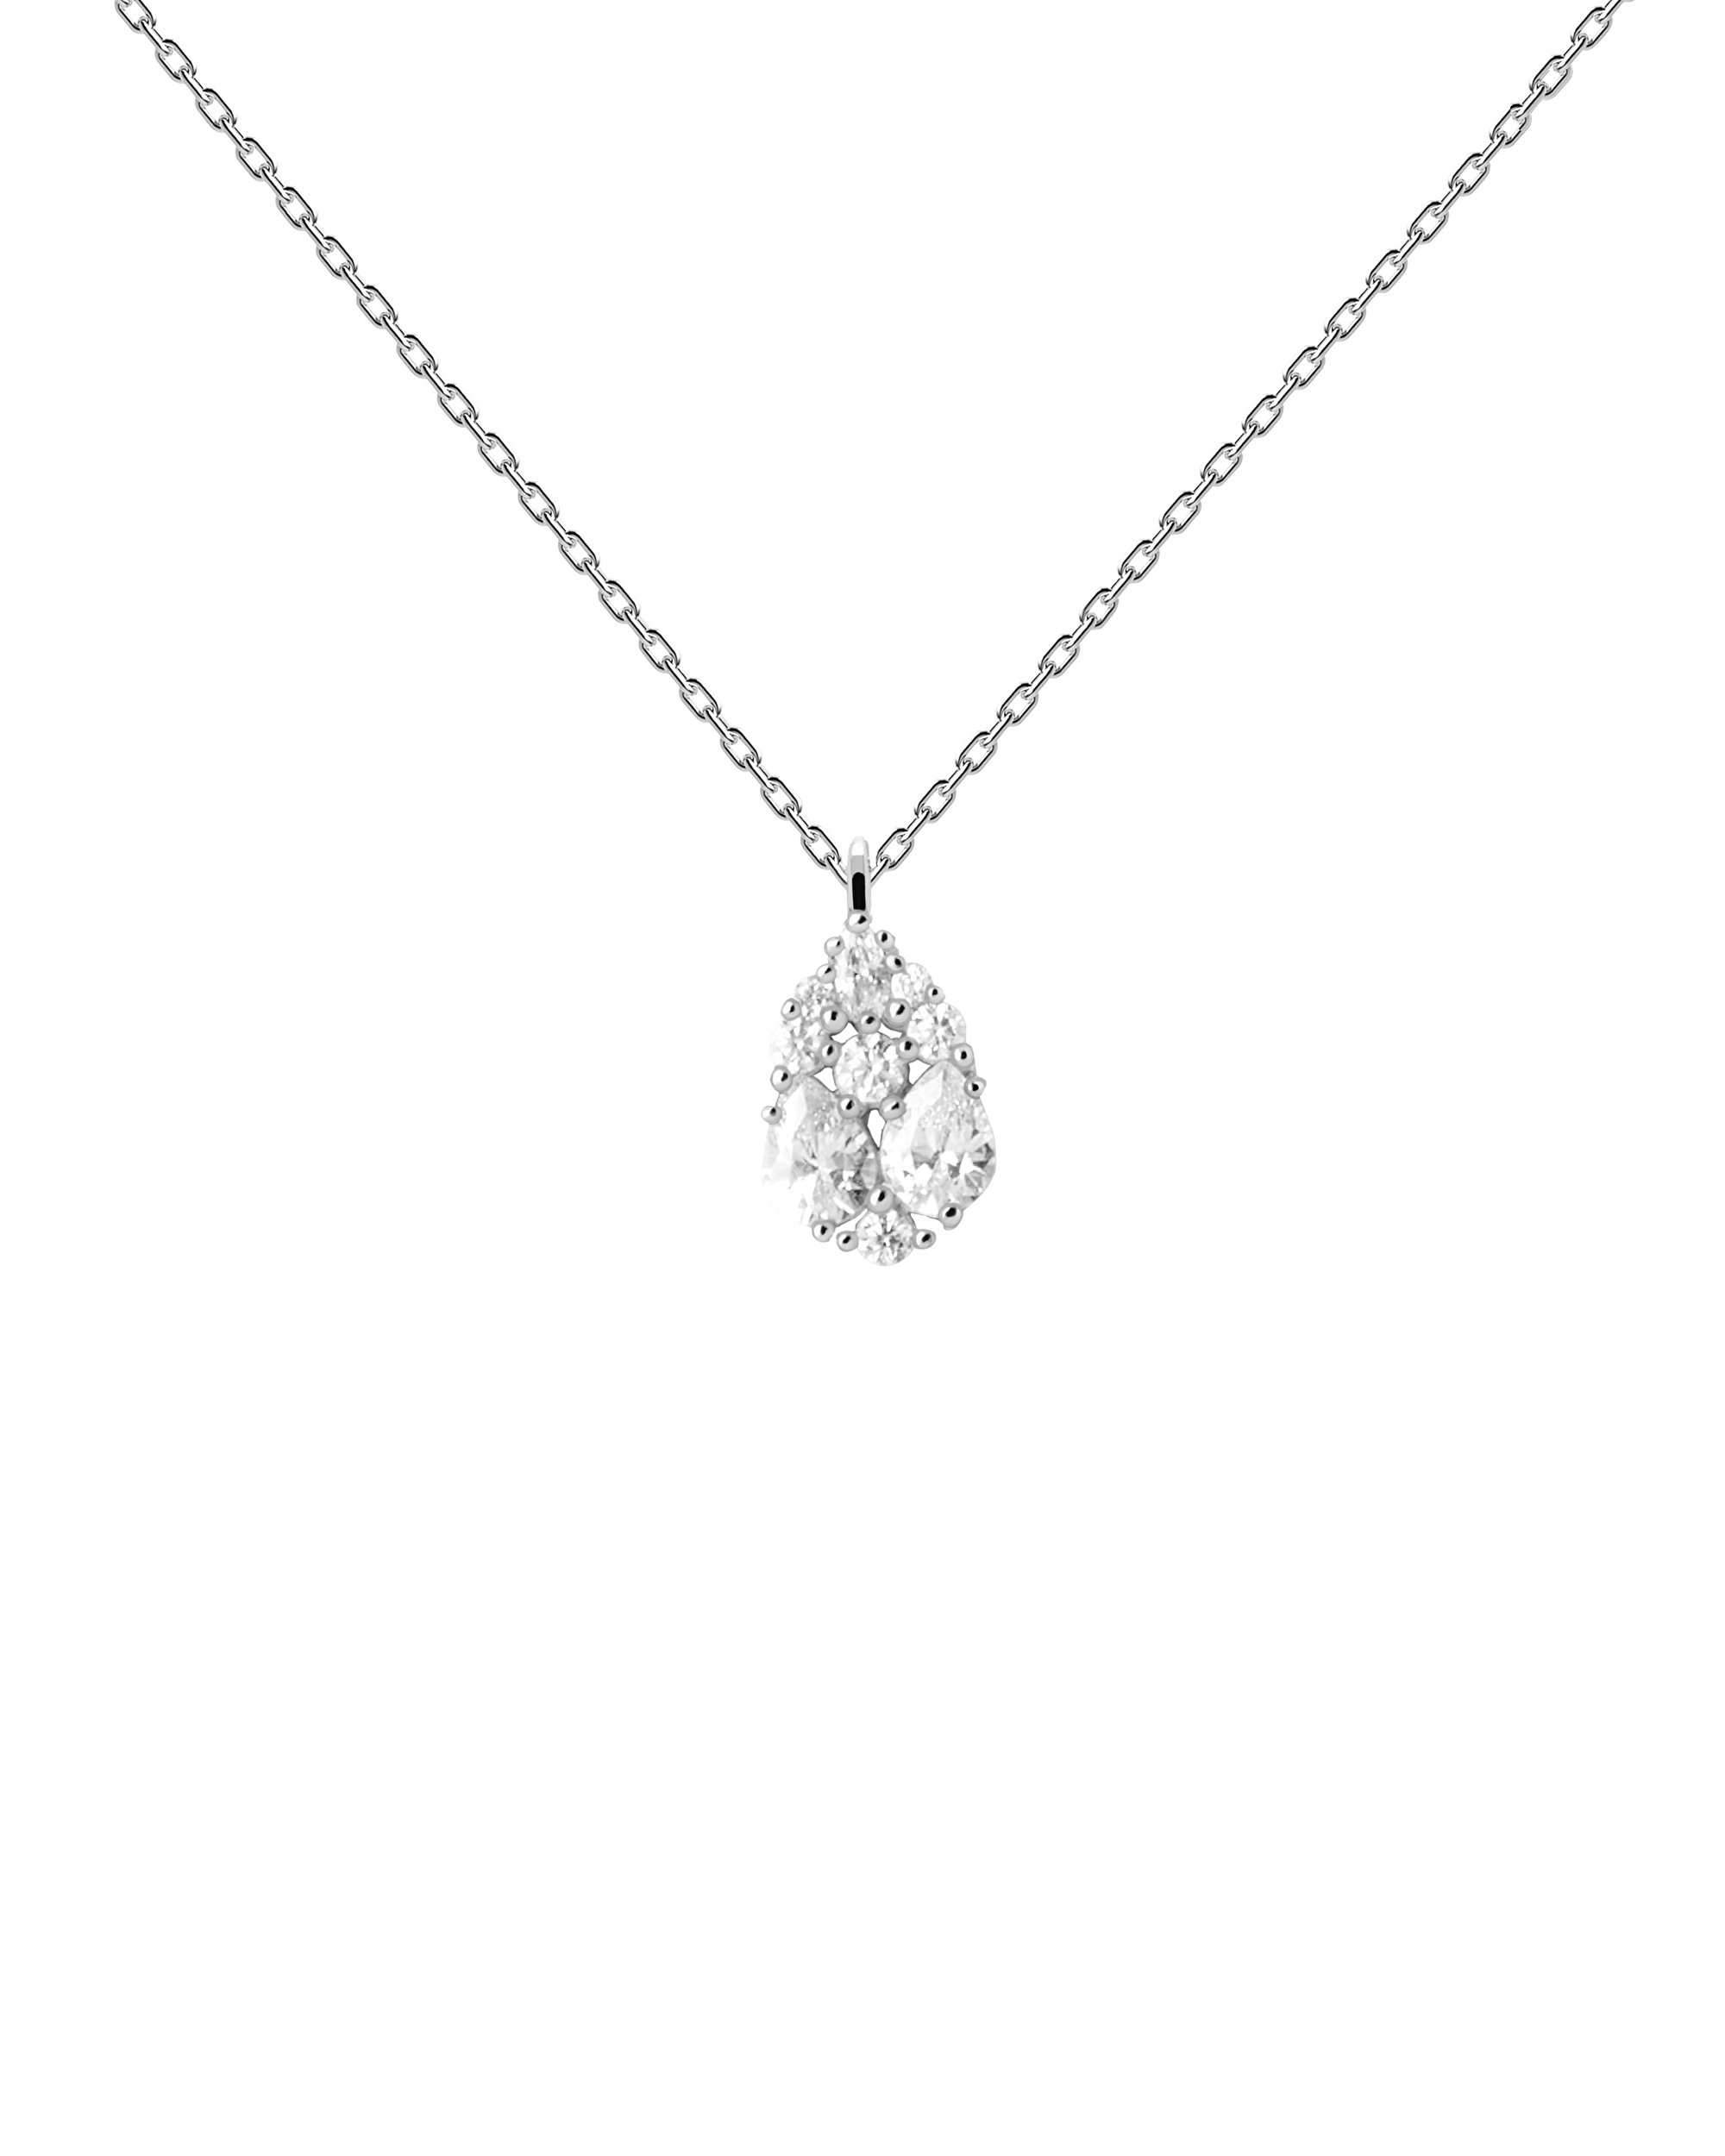 PDPAOLA Blyštivý strieborný náhrdelník Vanilla CO02-674-U (retiazka, prívesok)